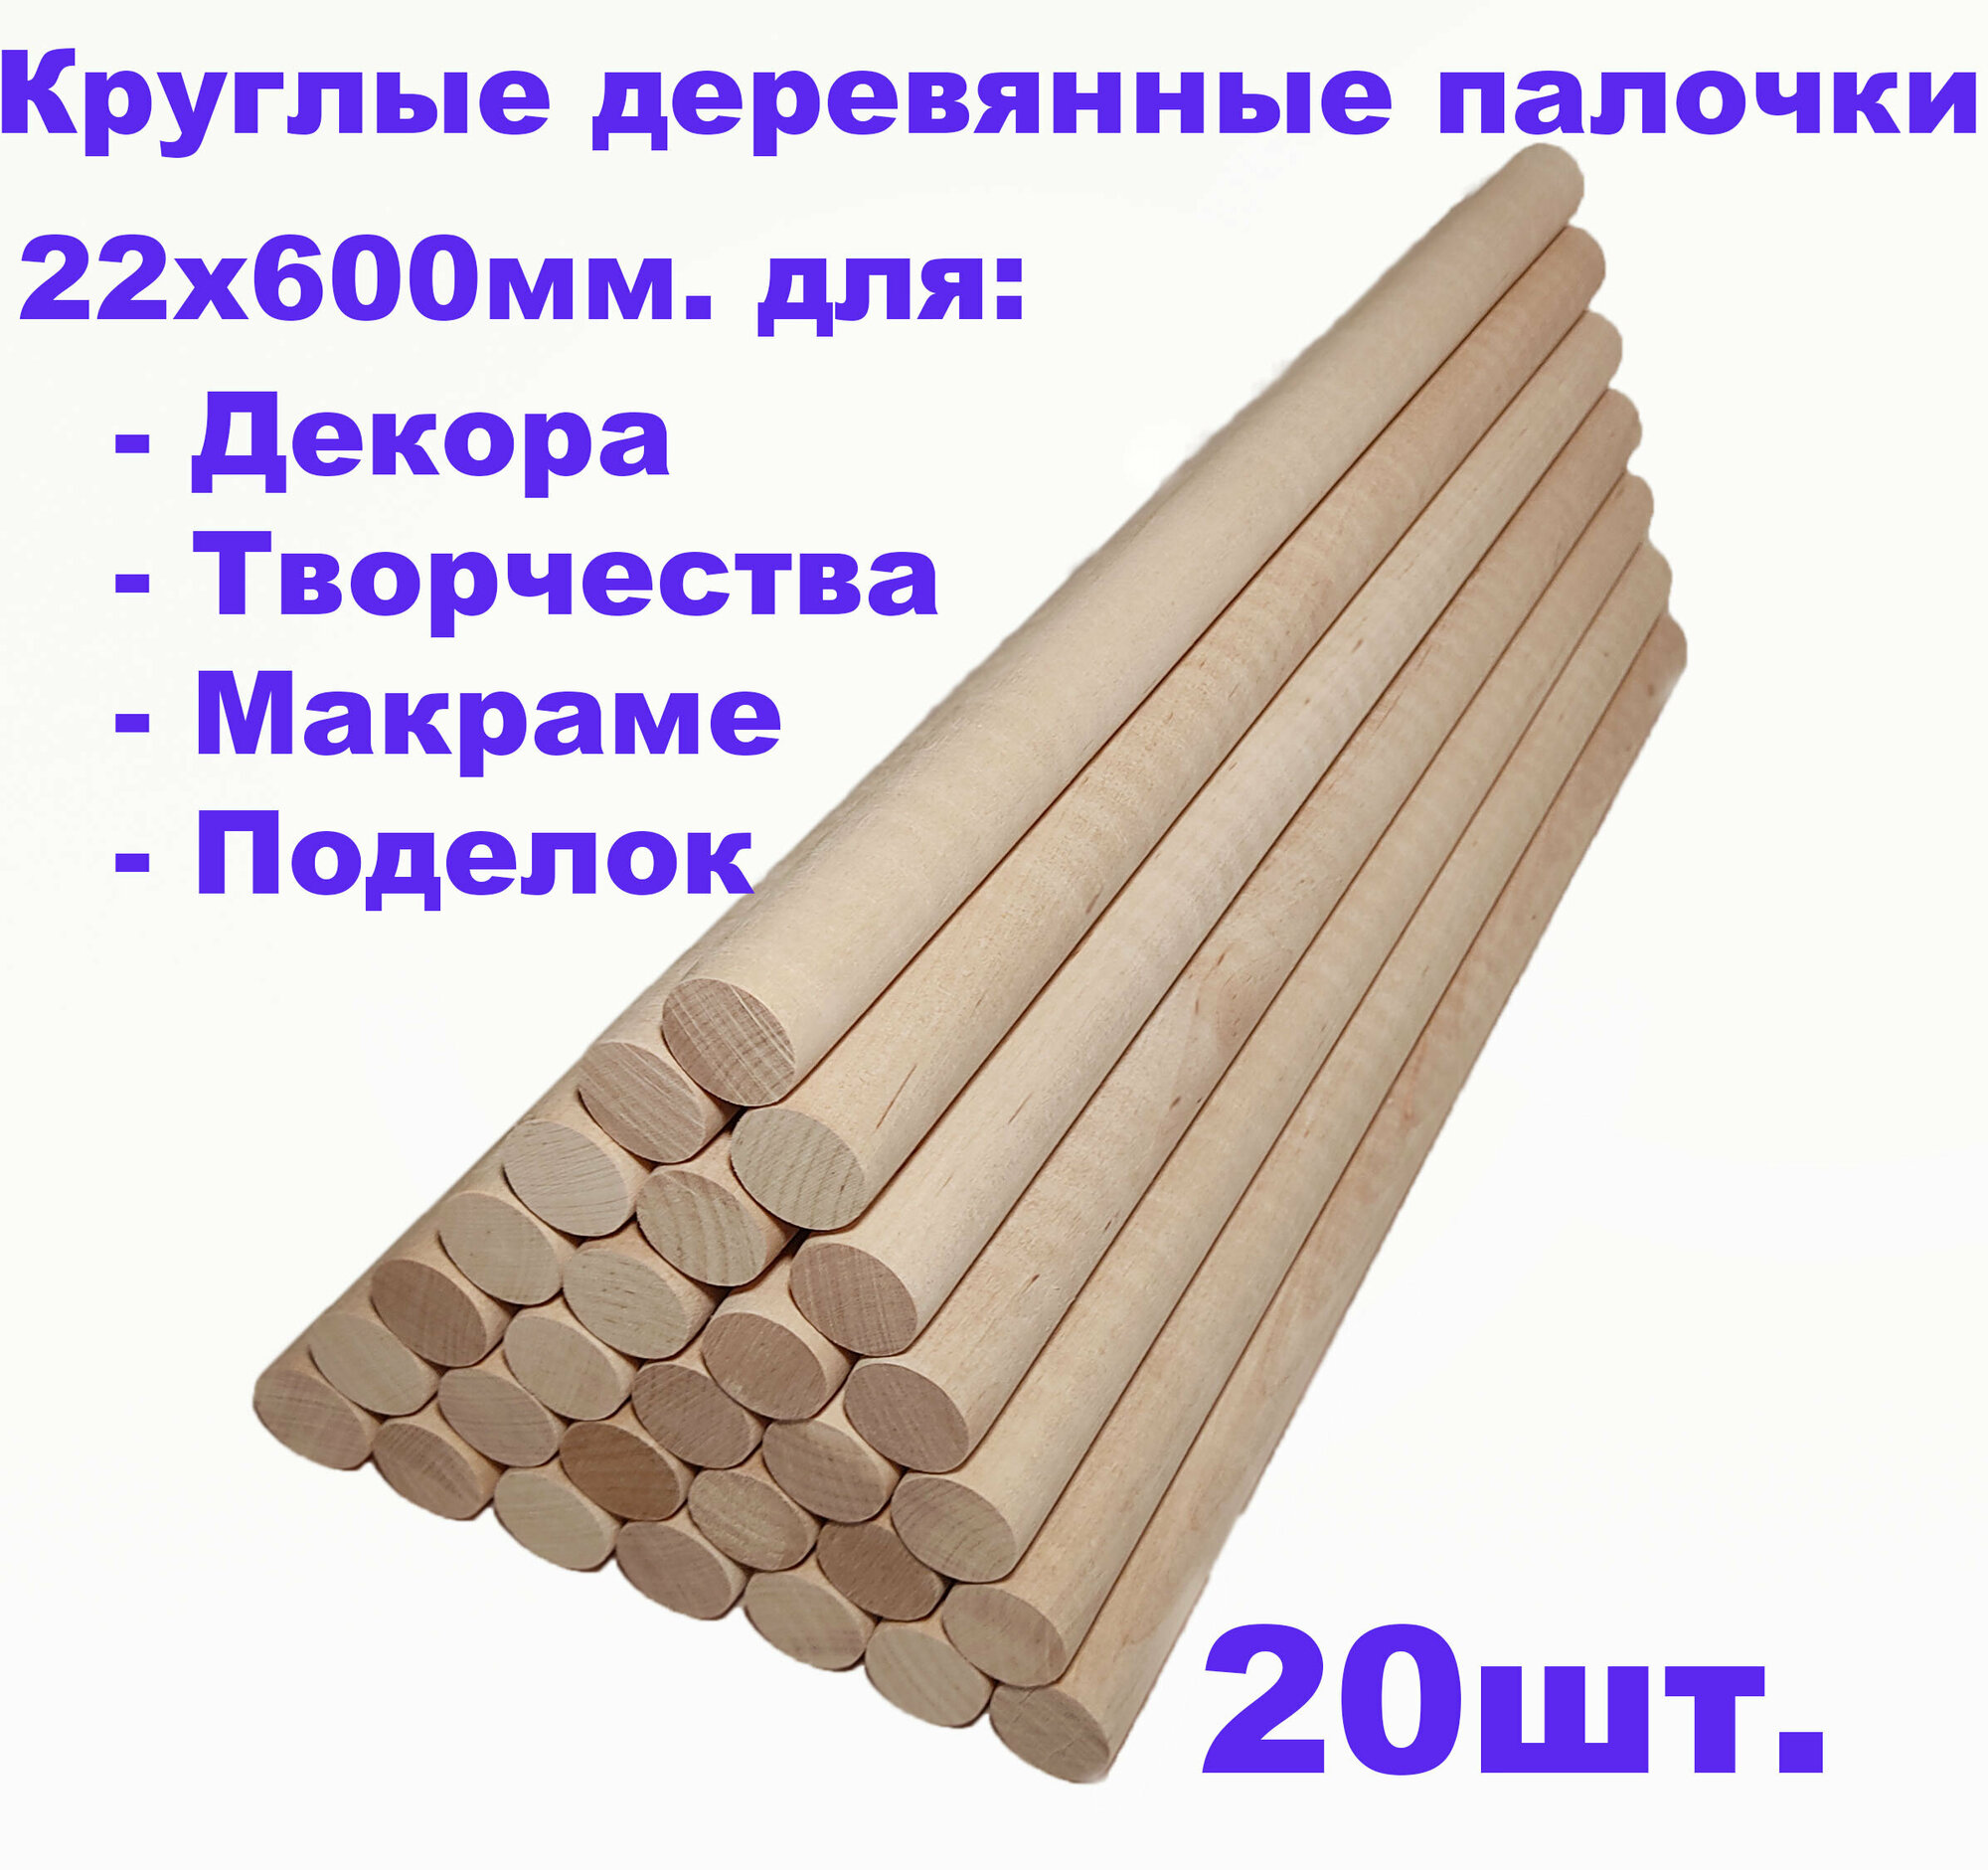 Круглые деревянные палочки для поделок и творчества 22х600 - 20шт.